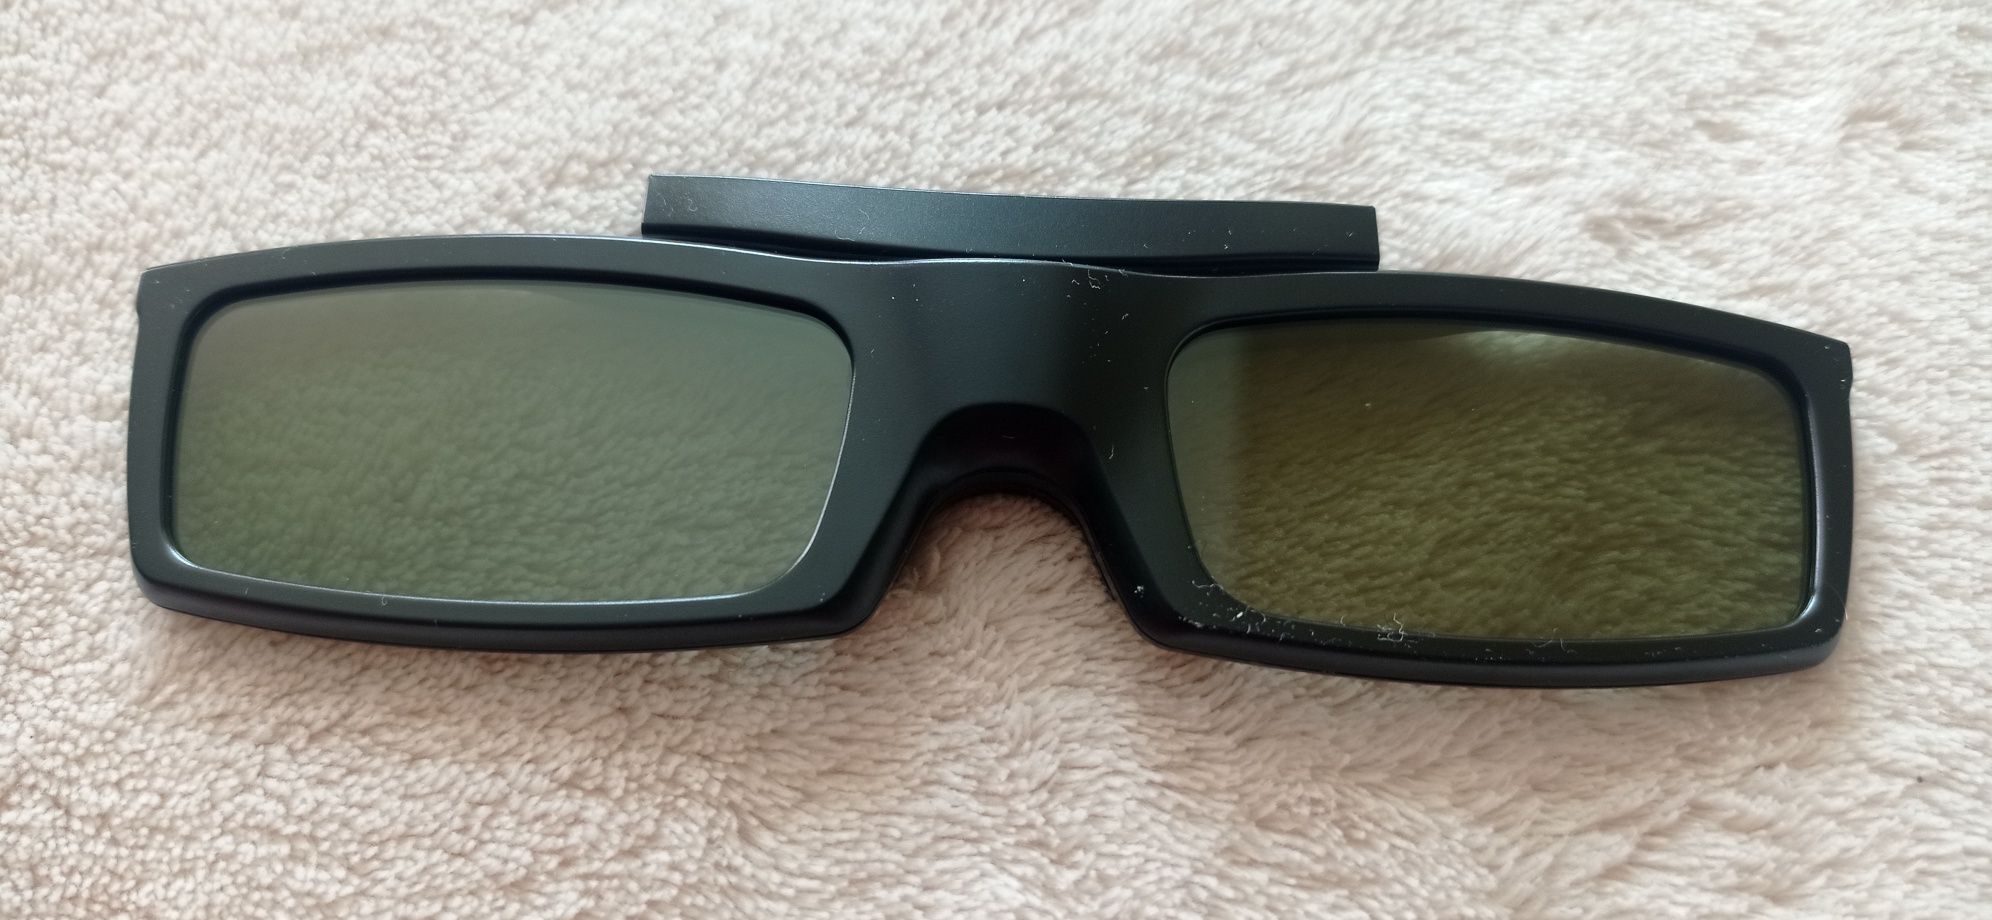 Очила Samsung Full HD 3D Active Glasses  
Активни 3Д очила

Подходящ